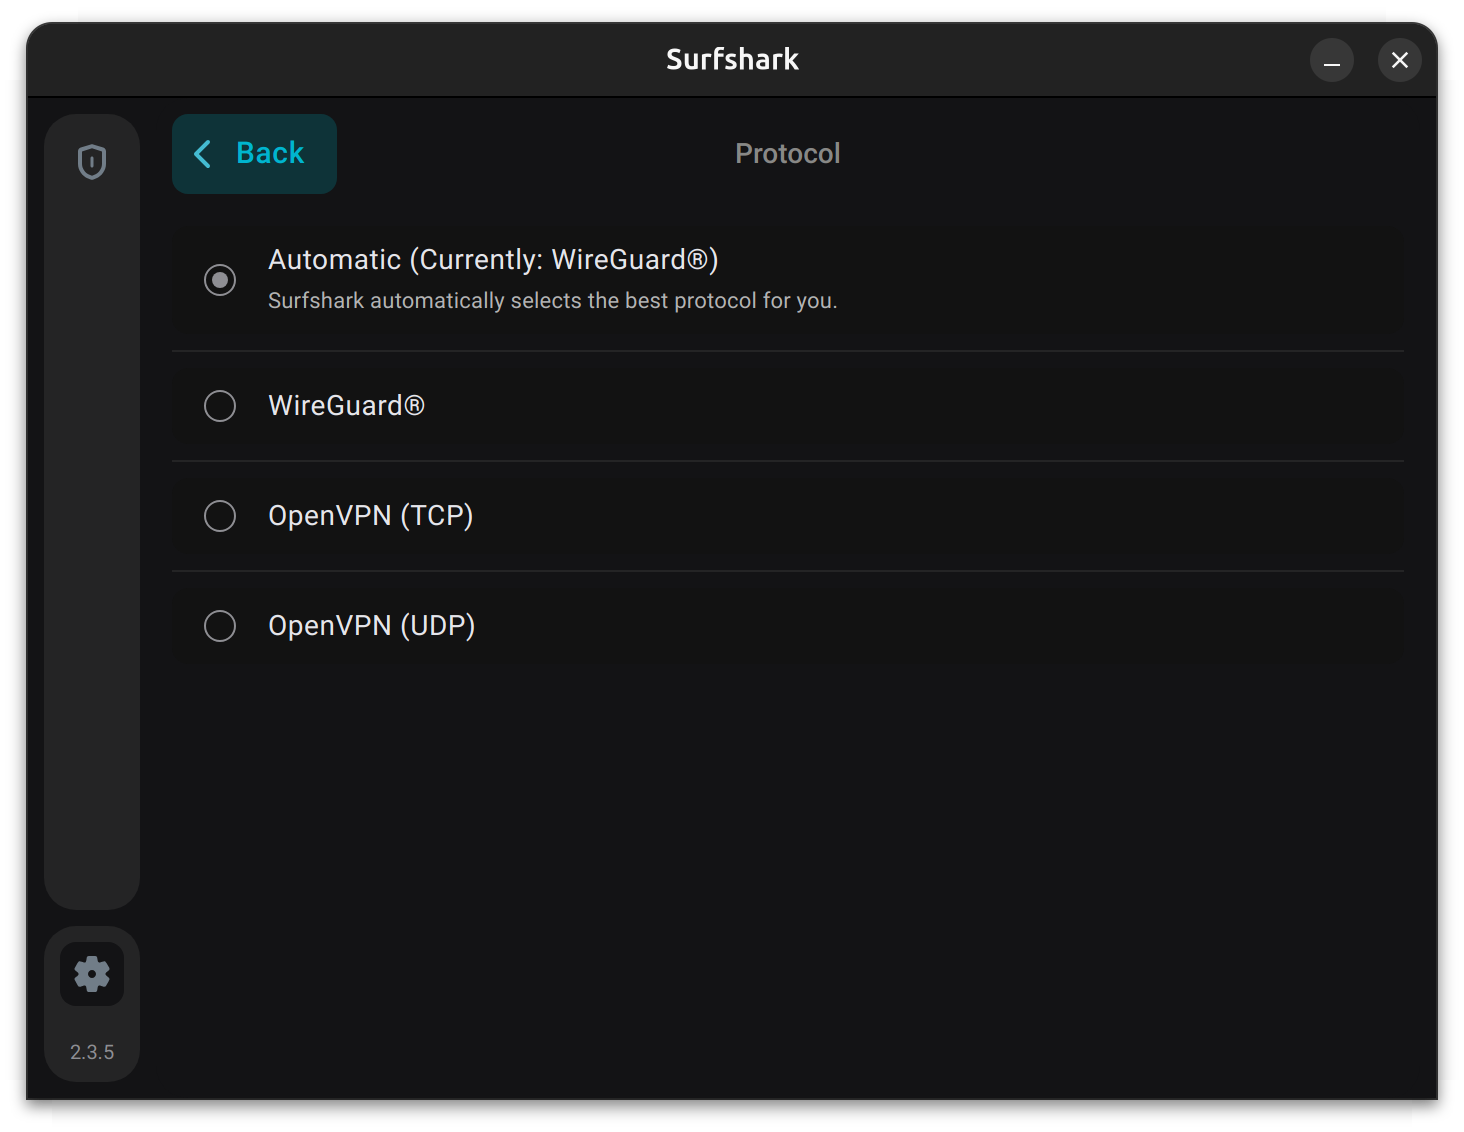 Testing the Surfshark VPN GUI App on Linux